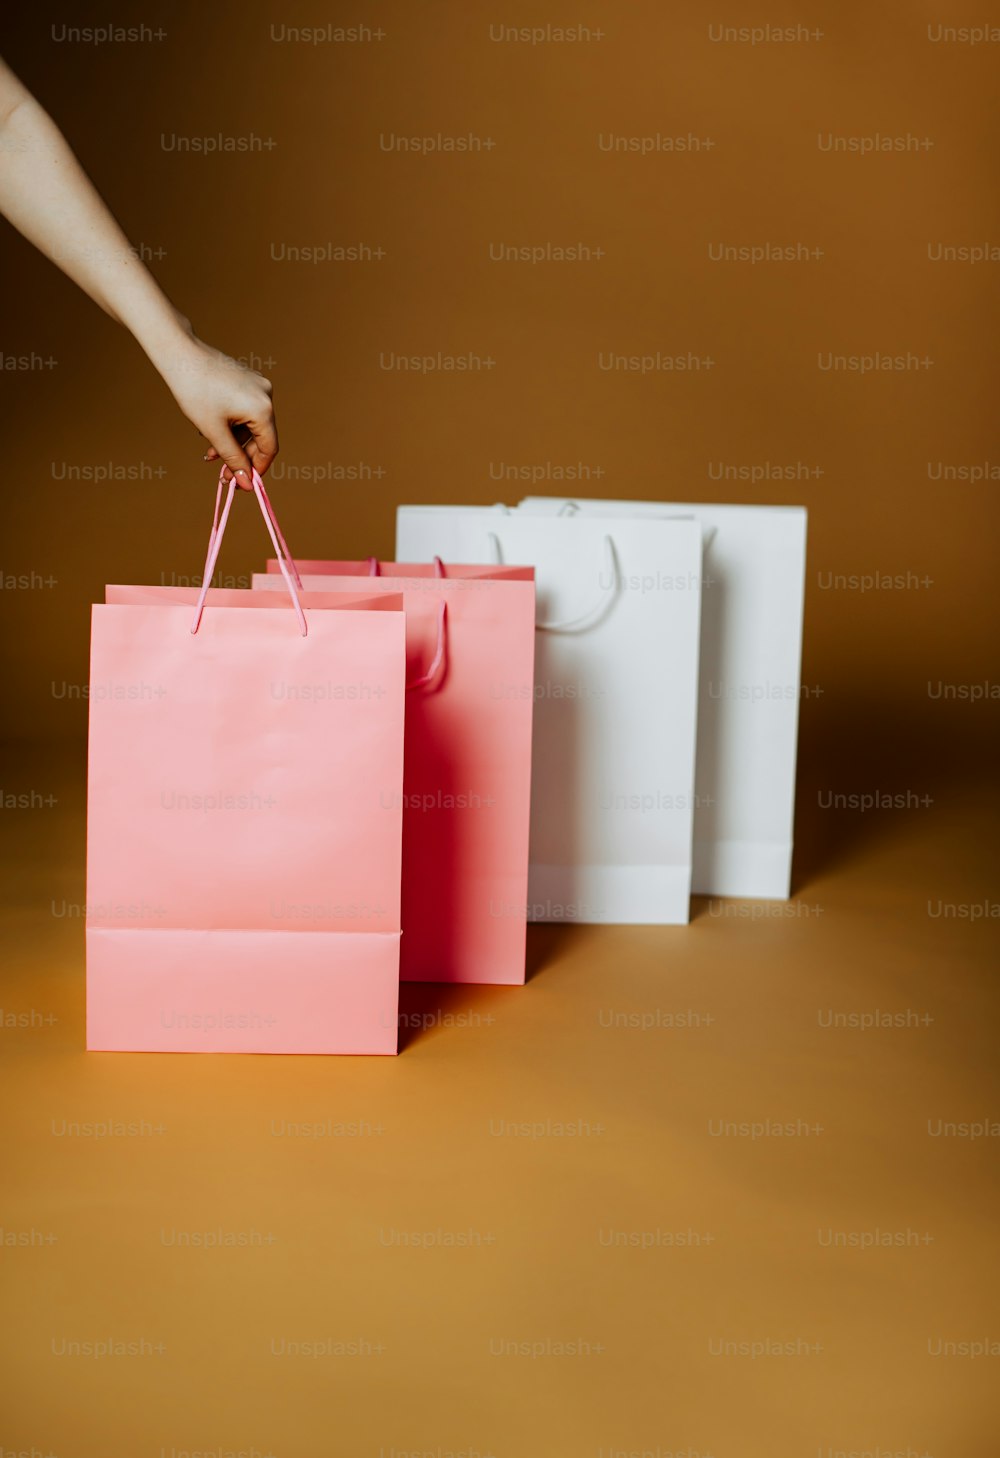 Una persona sosteniendo una bolsa de compras rosa frente a tres bolsas de compras blancas